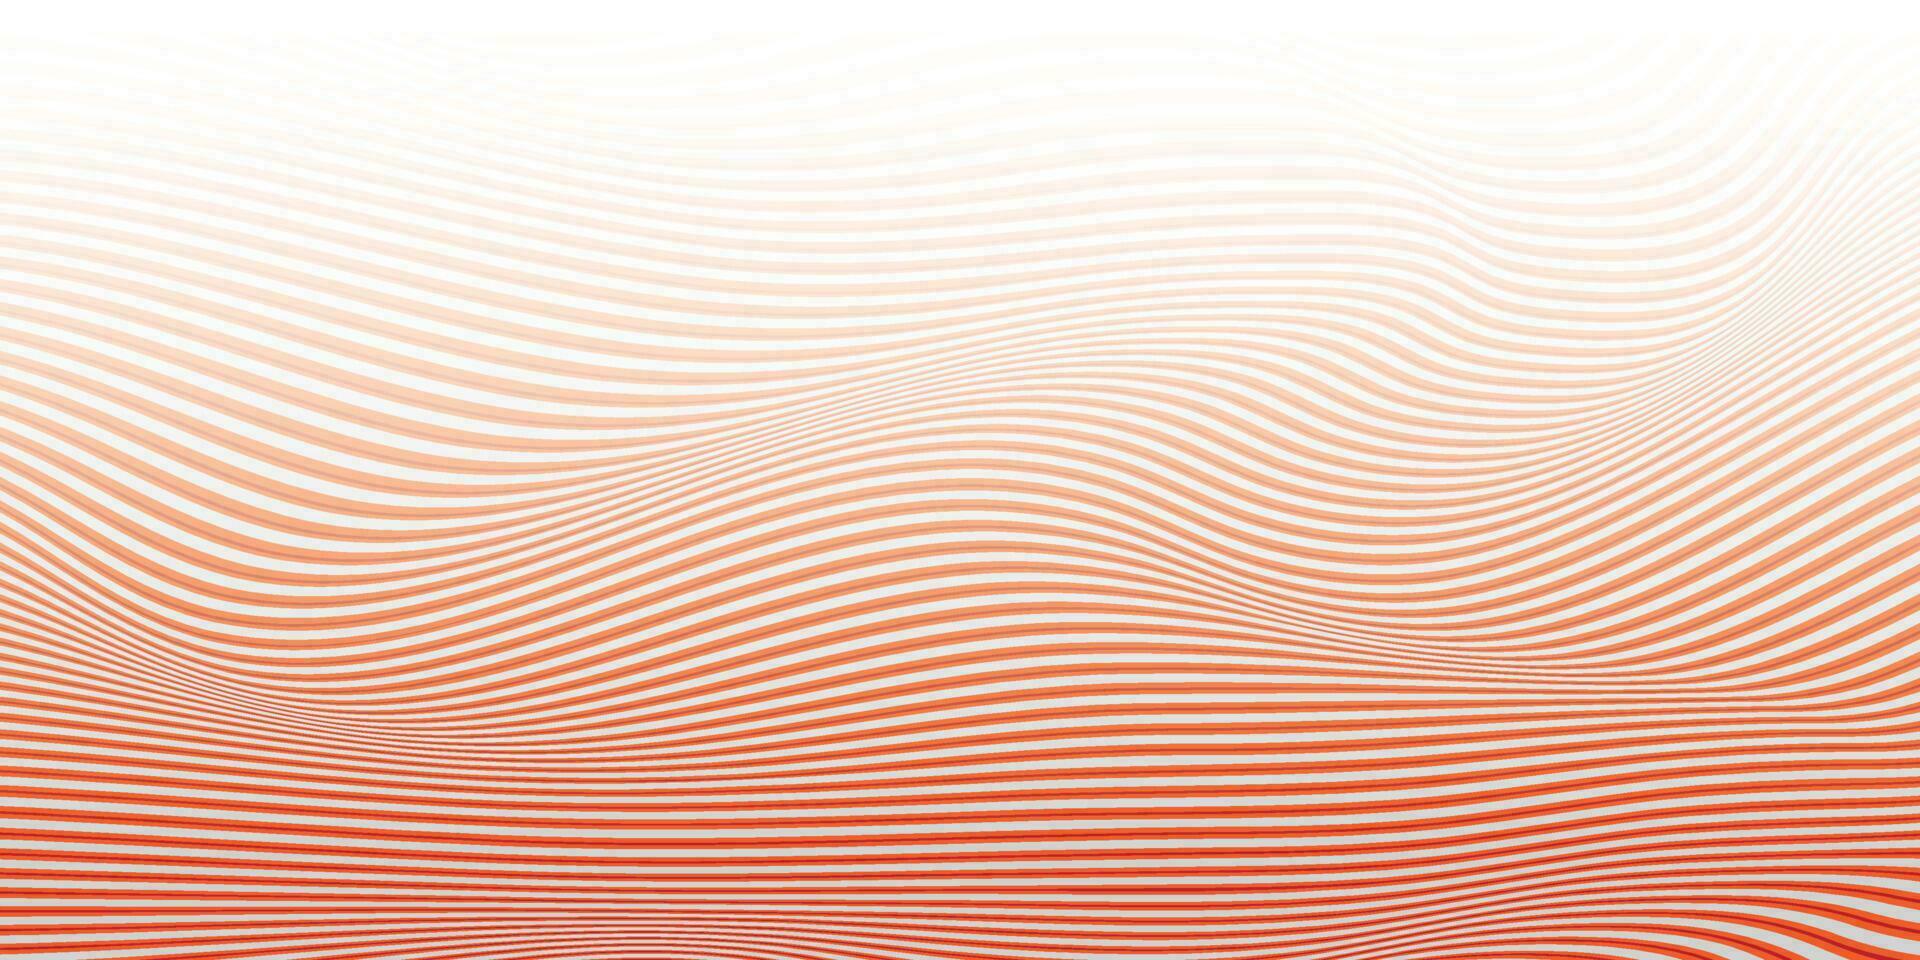 abstrakt vit och orange Färg, modern design Ränder bakgrund med geometrisk runda form, vågig mönster. vektor illustration.